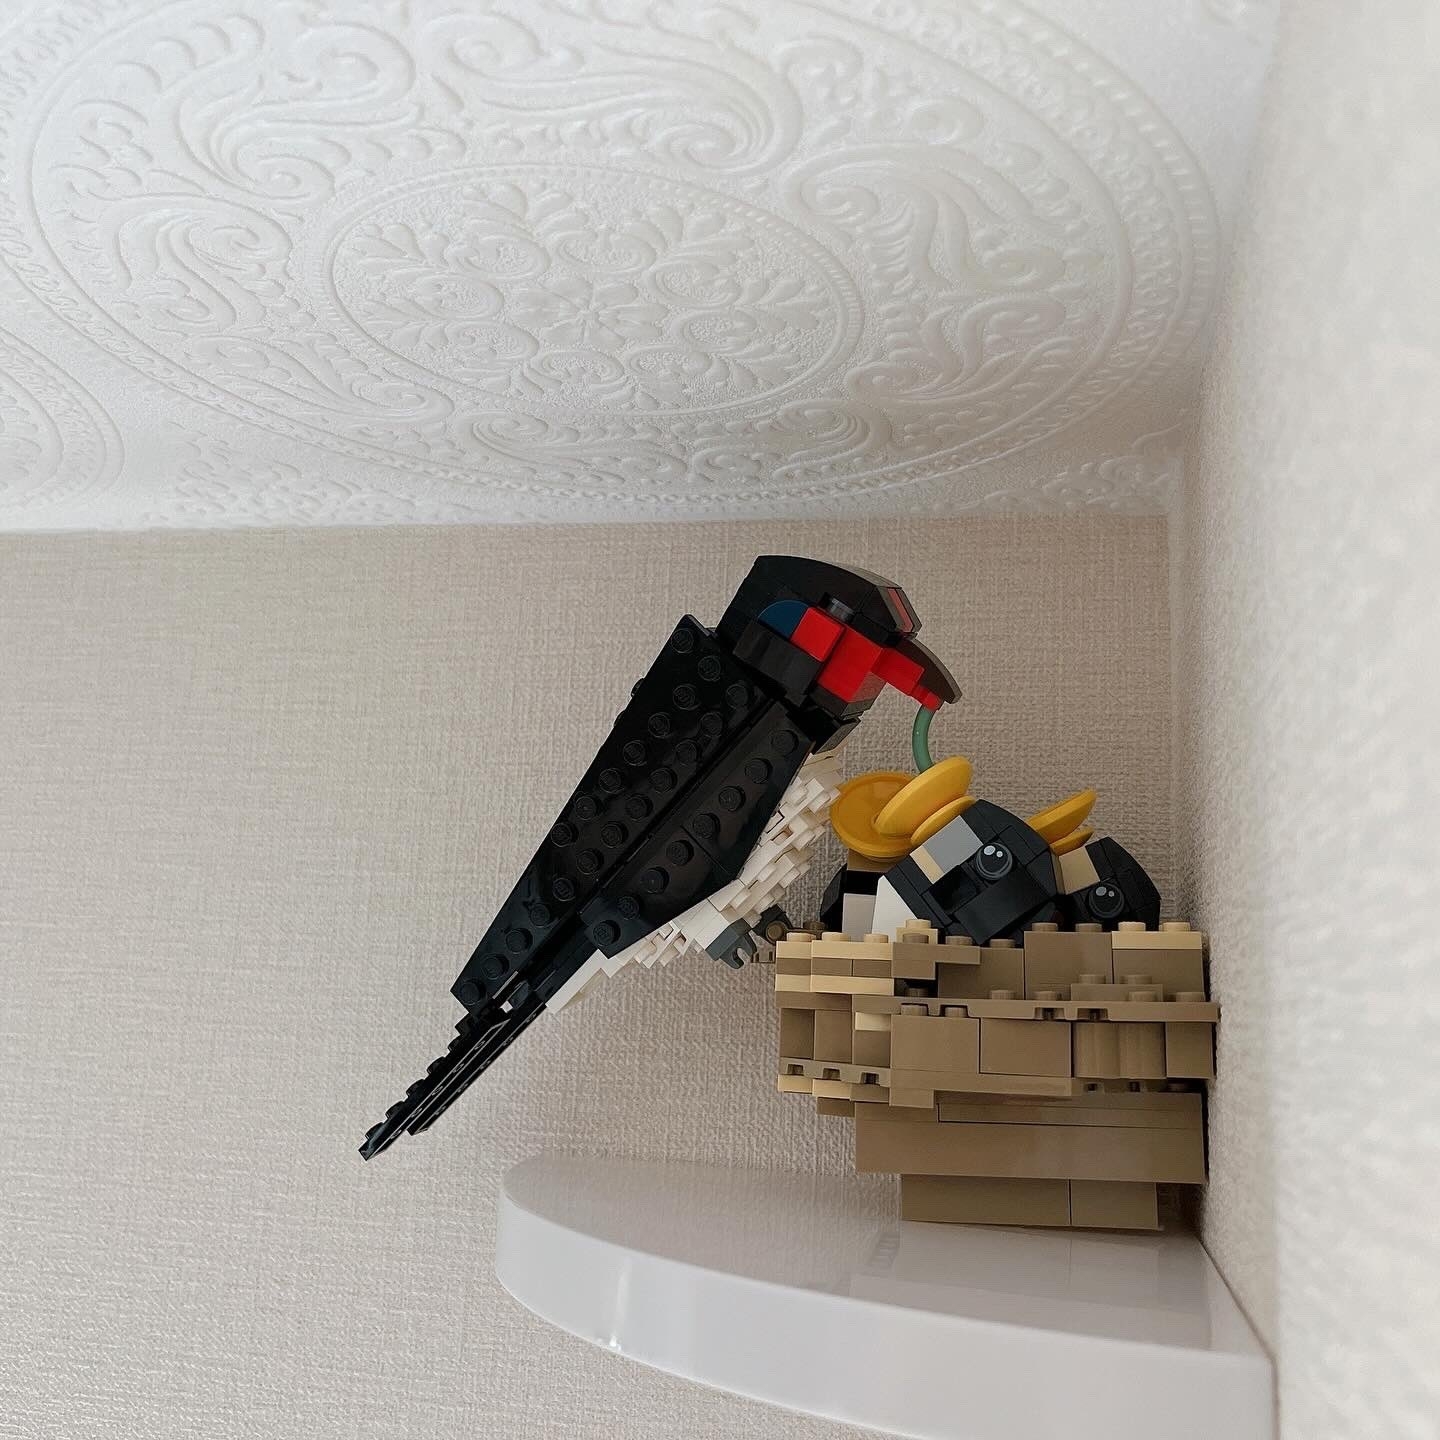 レゴで作られた鳥が壁に取り付けられている様子。